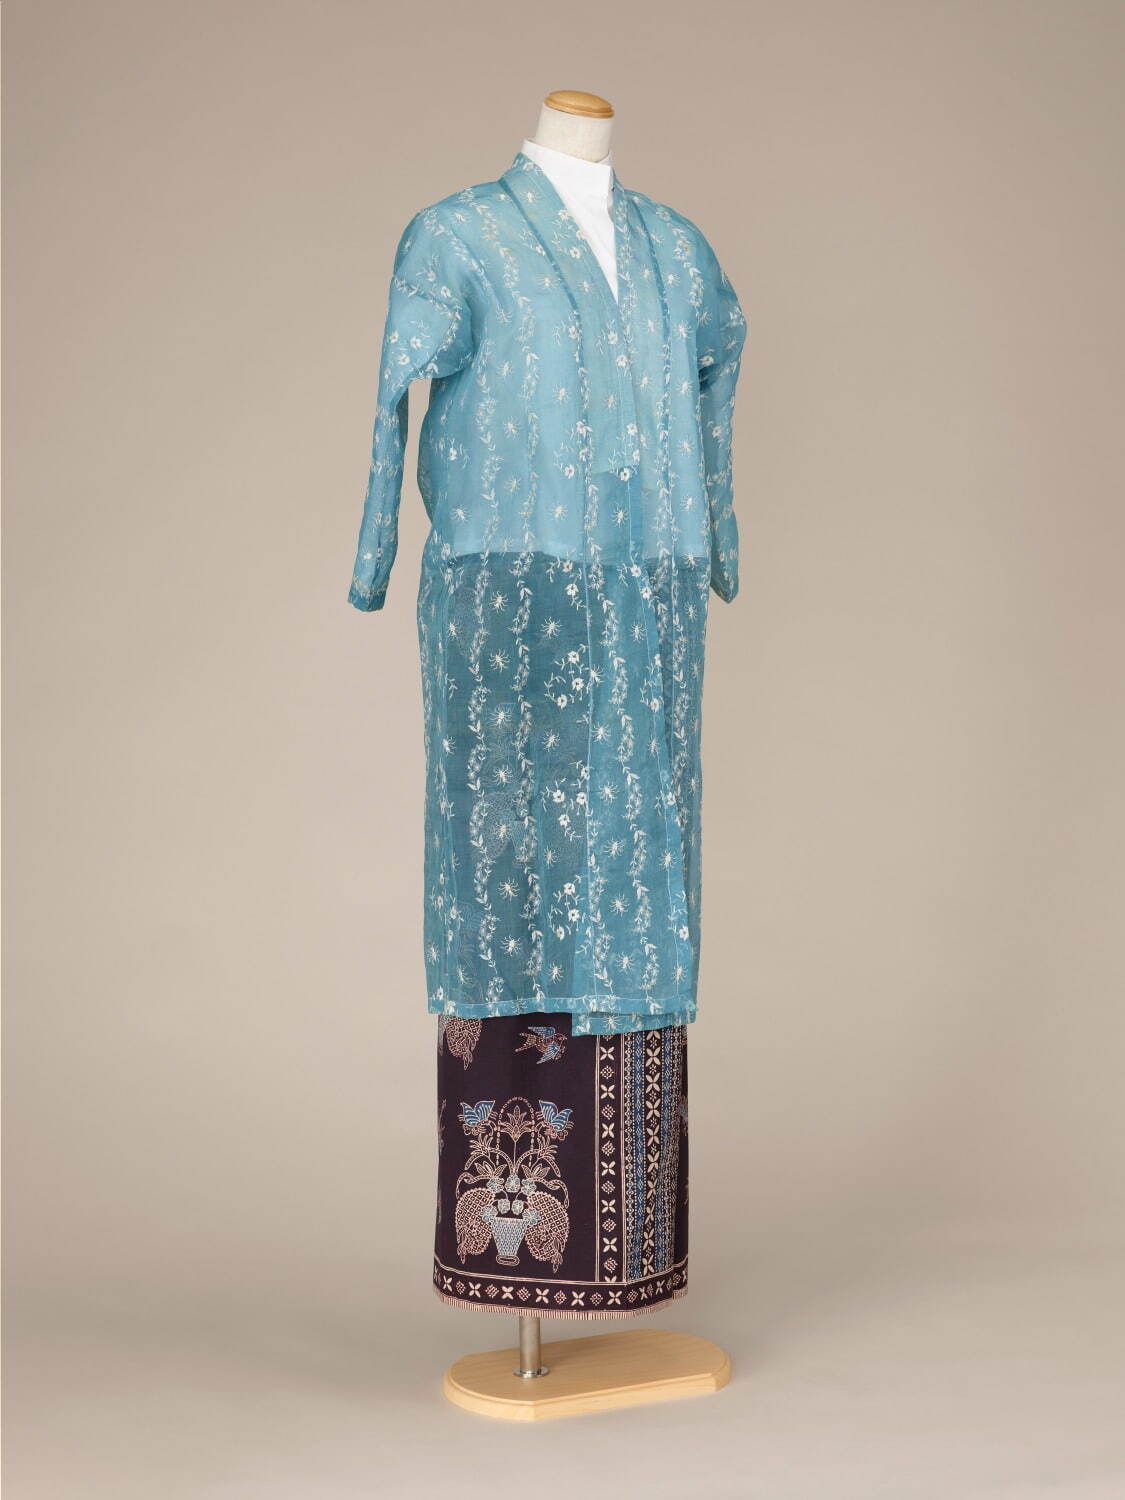 上衣 1920-1930年代 腰衣 19世紀後期-20世紀初期